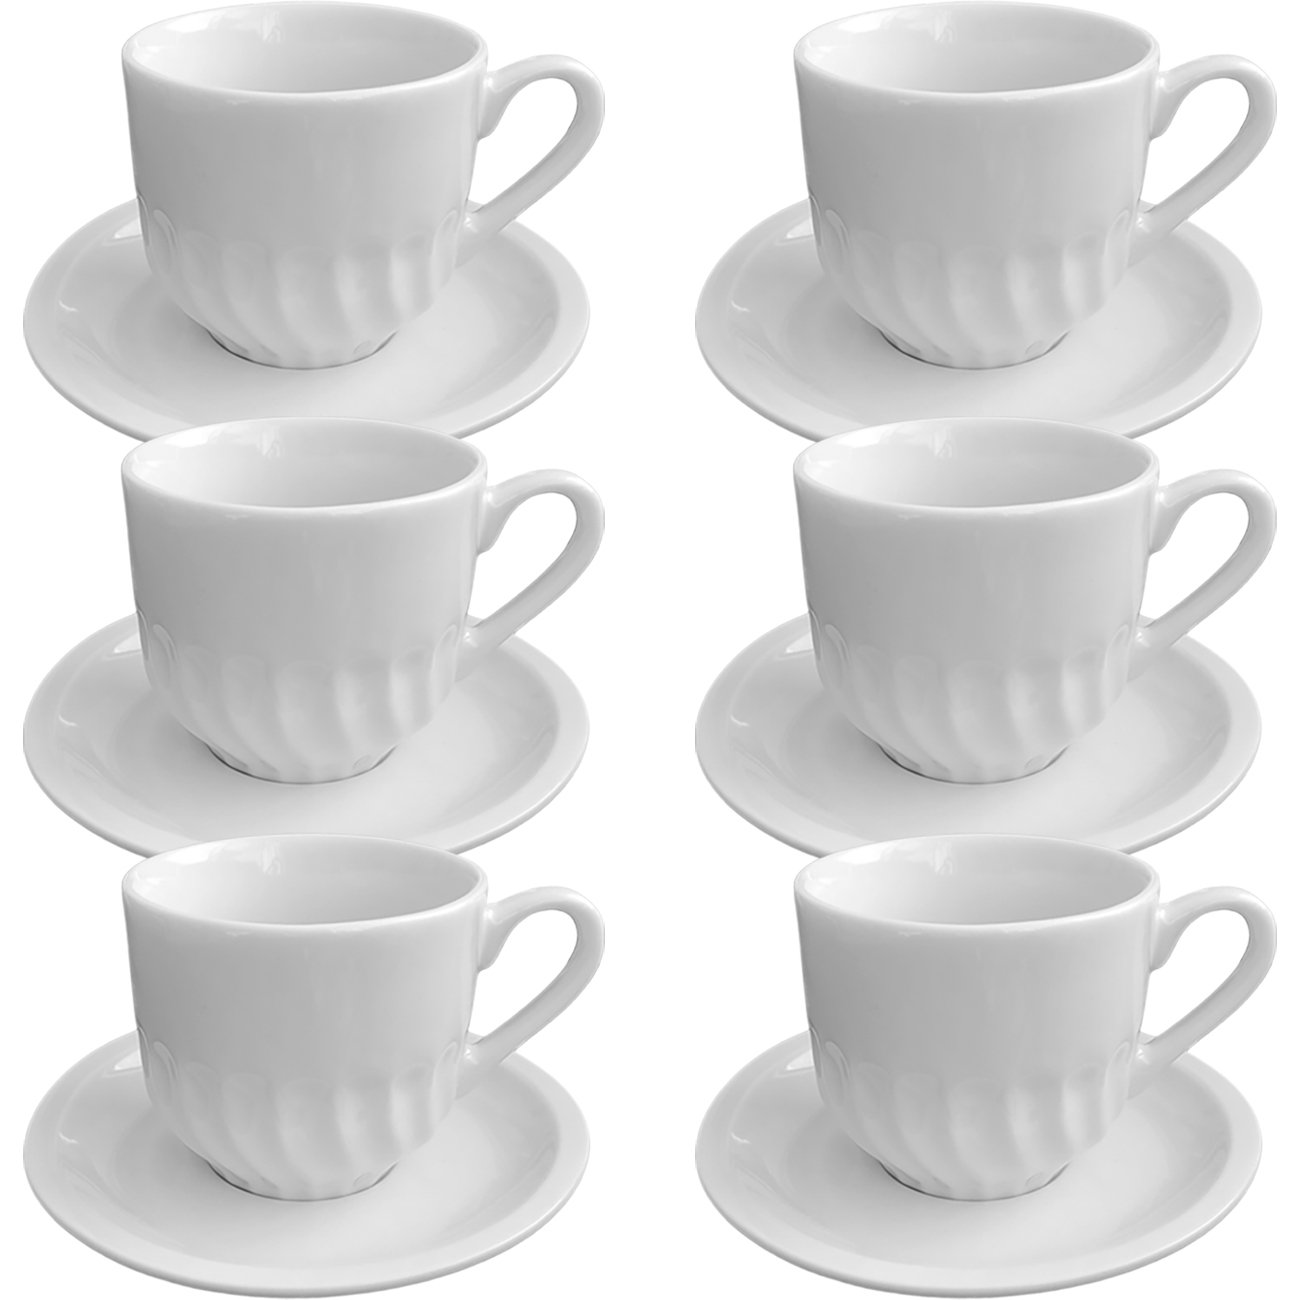 Jogo Para Chá e Café Durable Porcelana - Ideal Lar